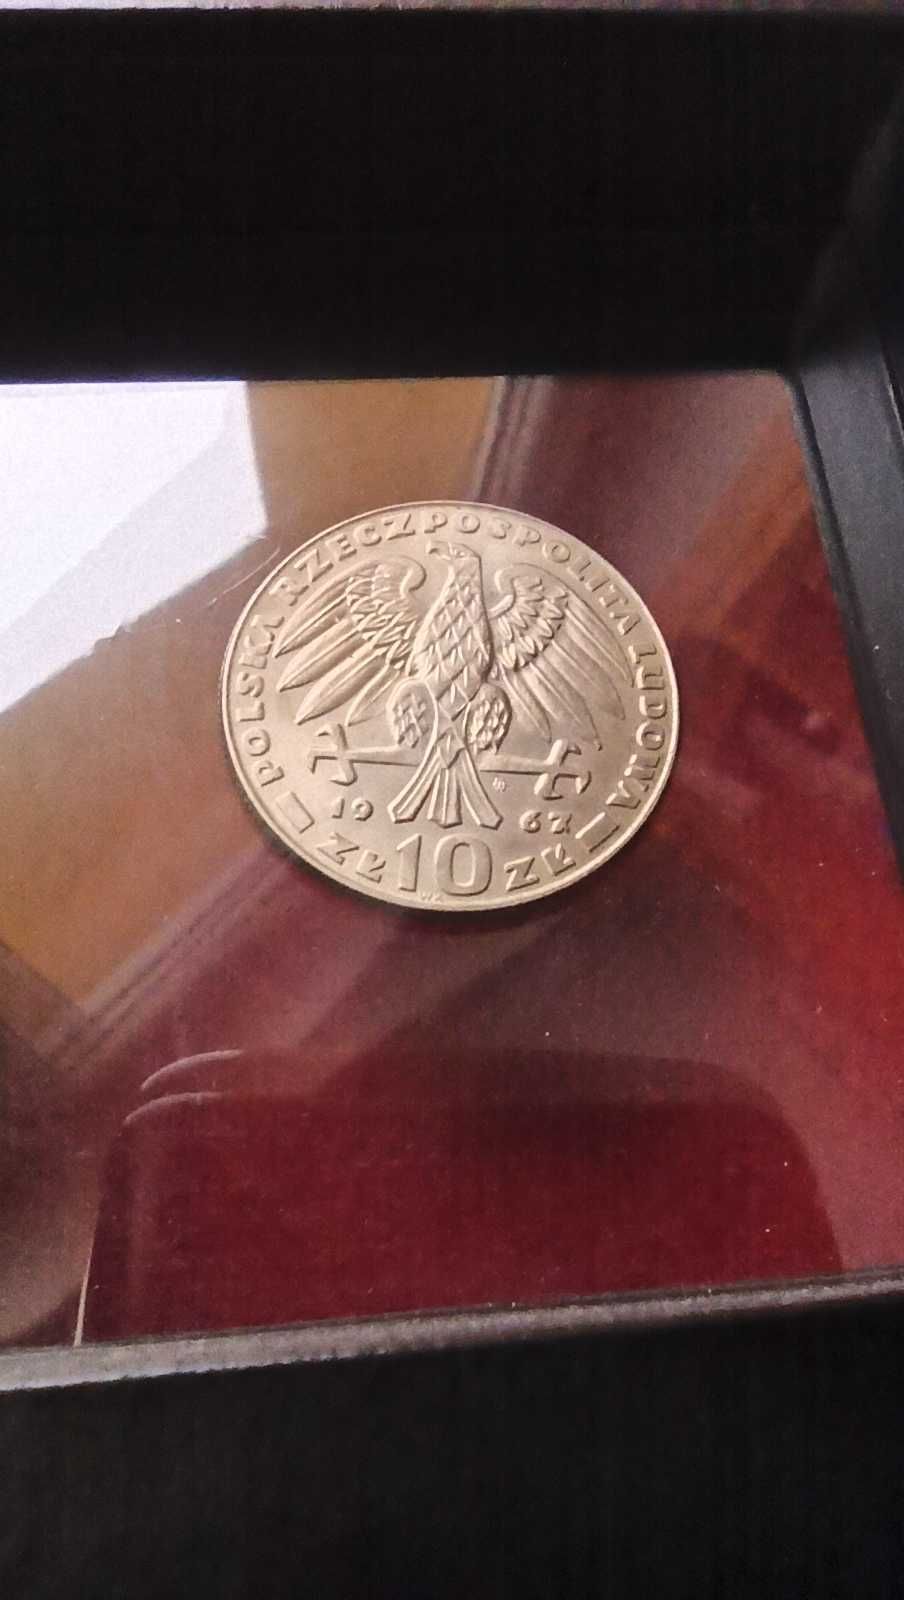 PRL, Moneta 10 złotych Karol Świerczewski 1967r / Mennicza